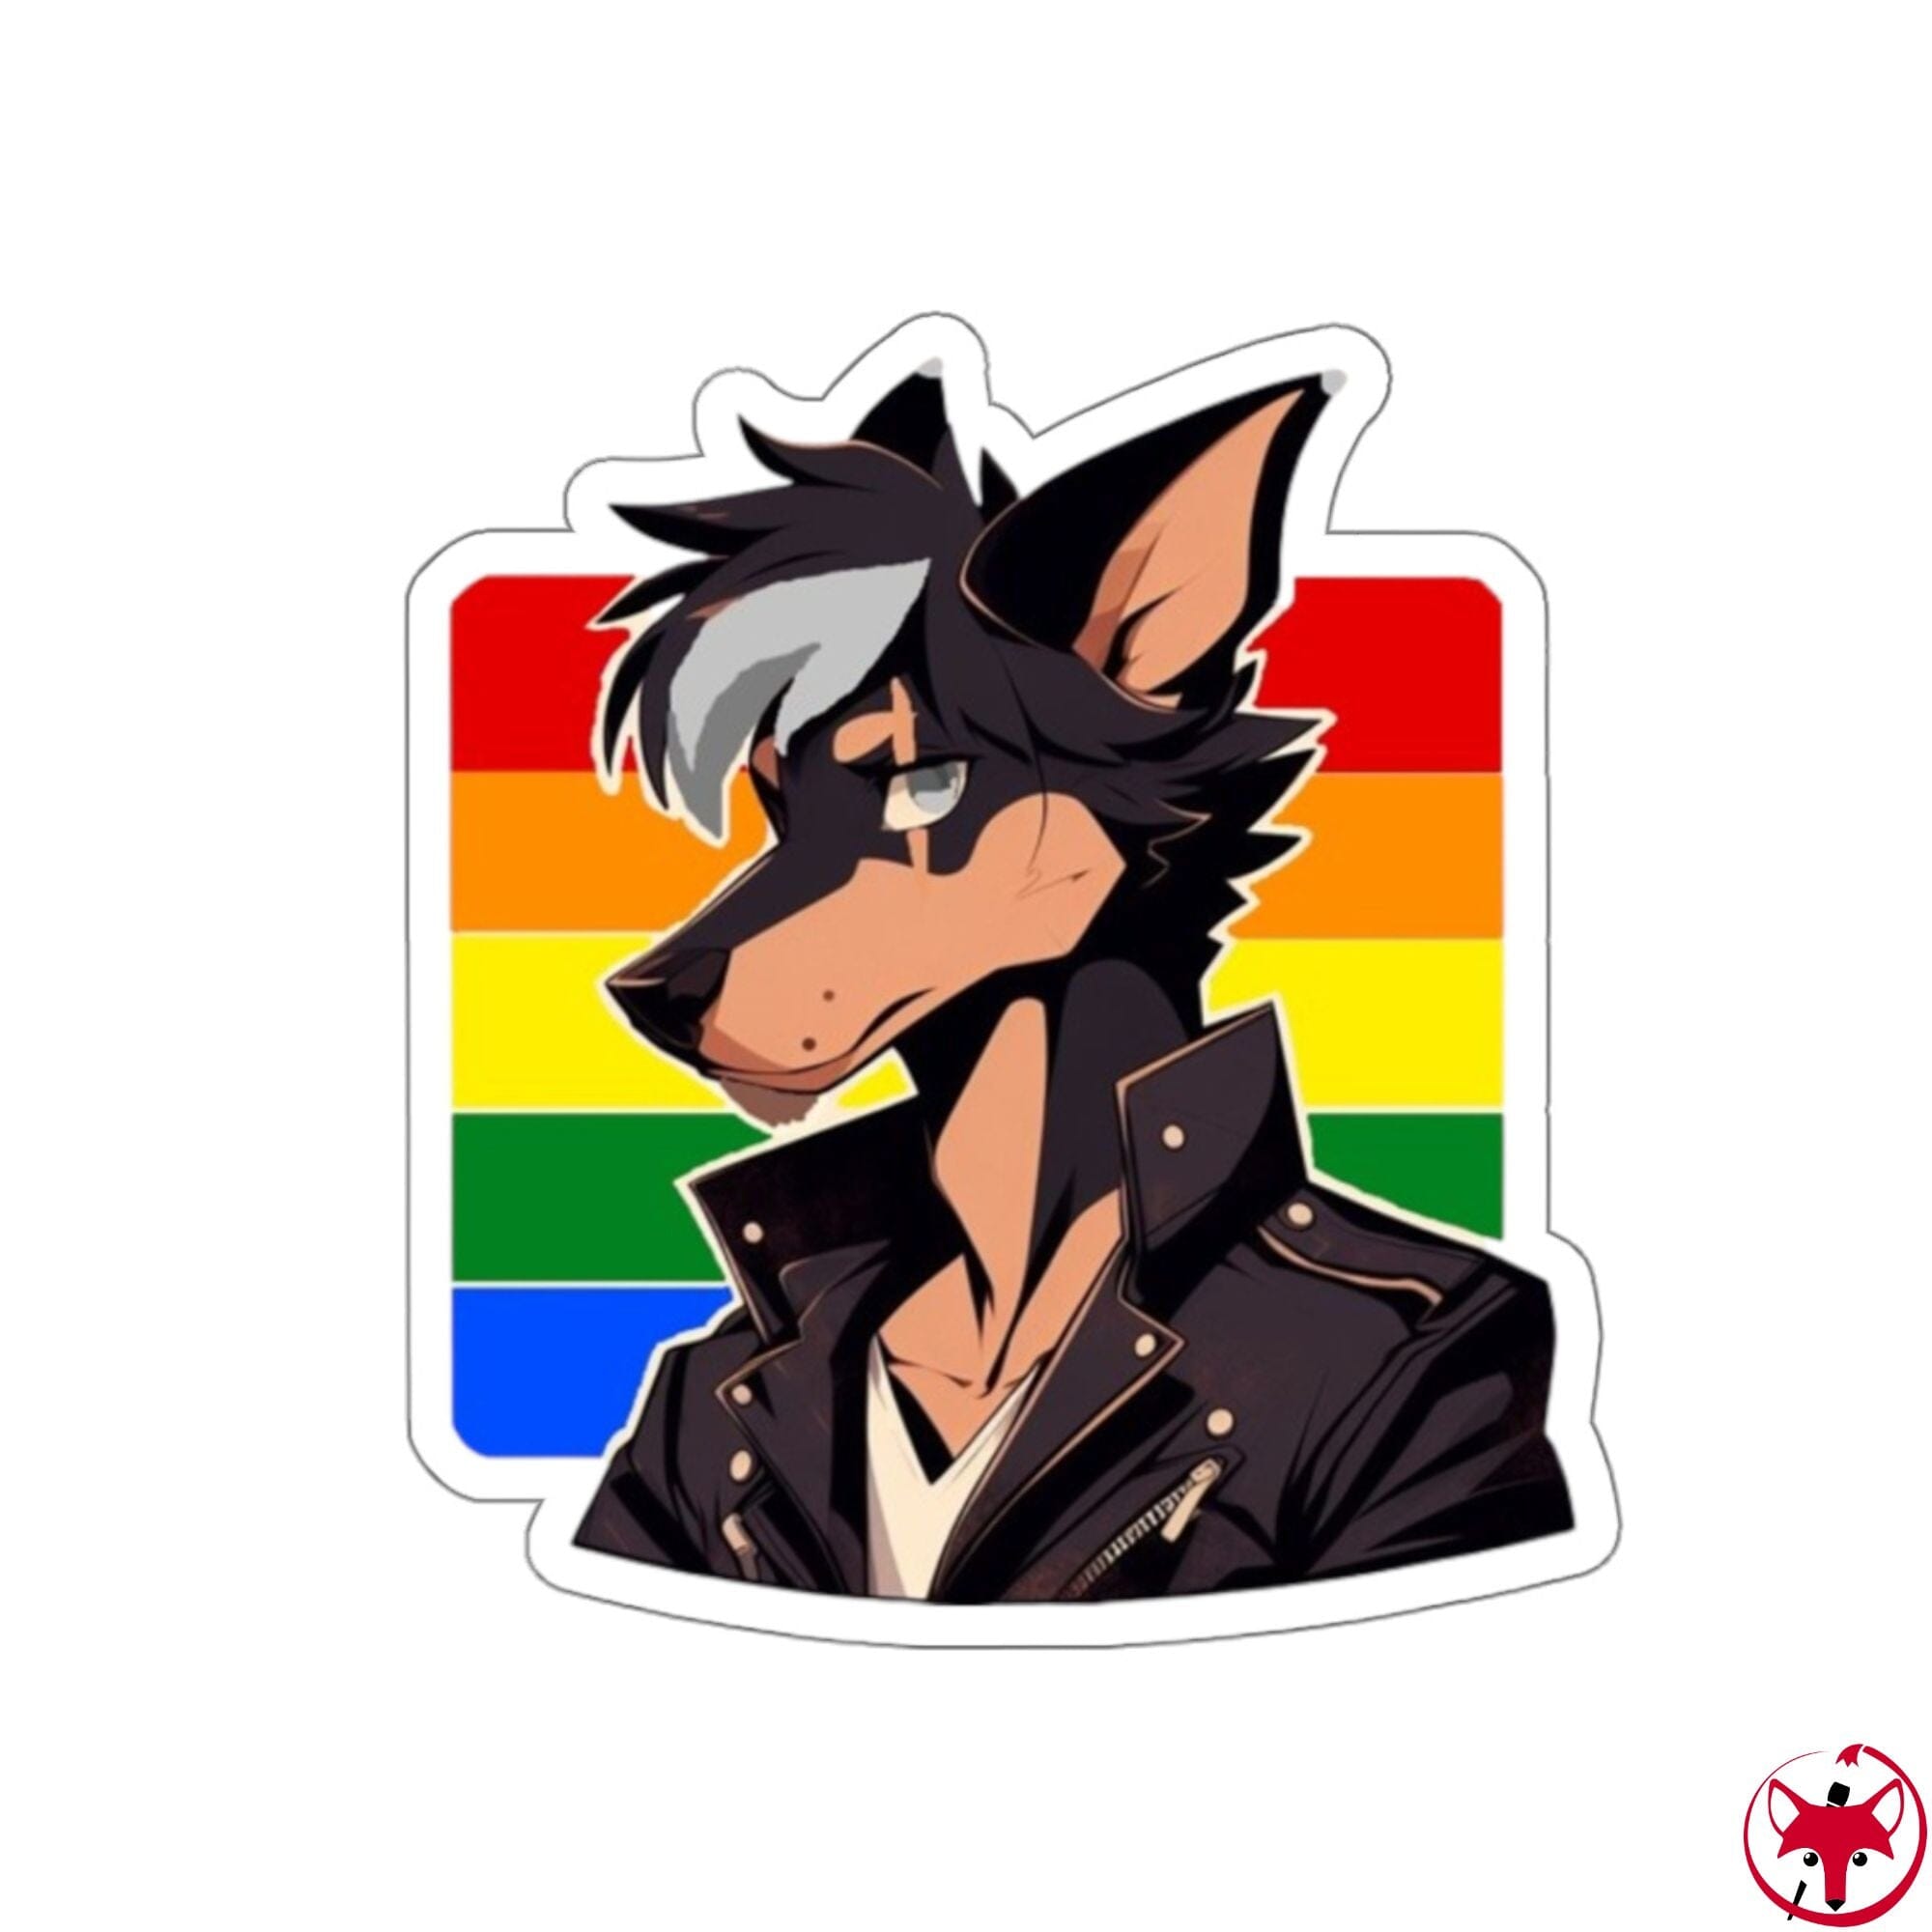 MrMlemphis - Homosexual Flag - Sticker